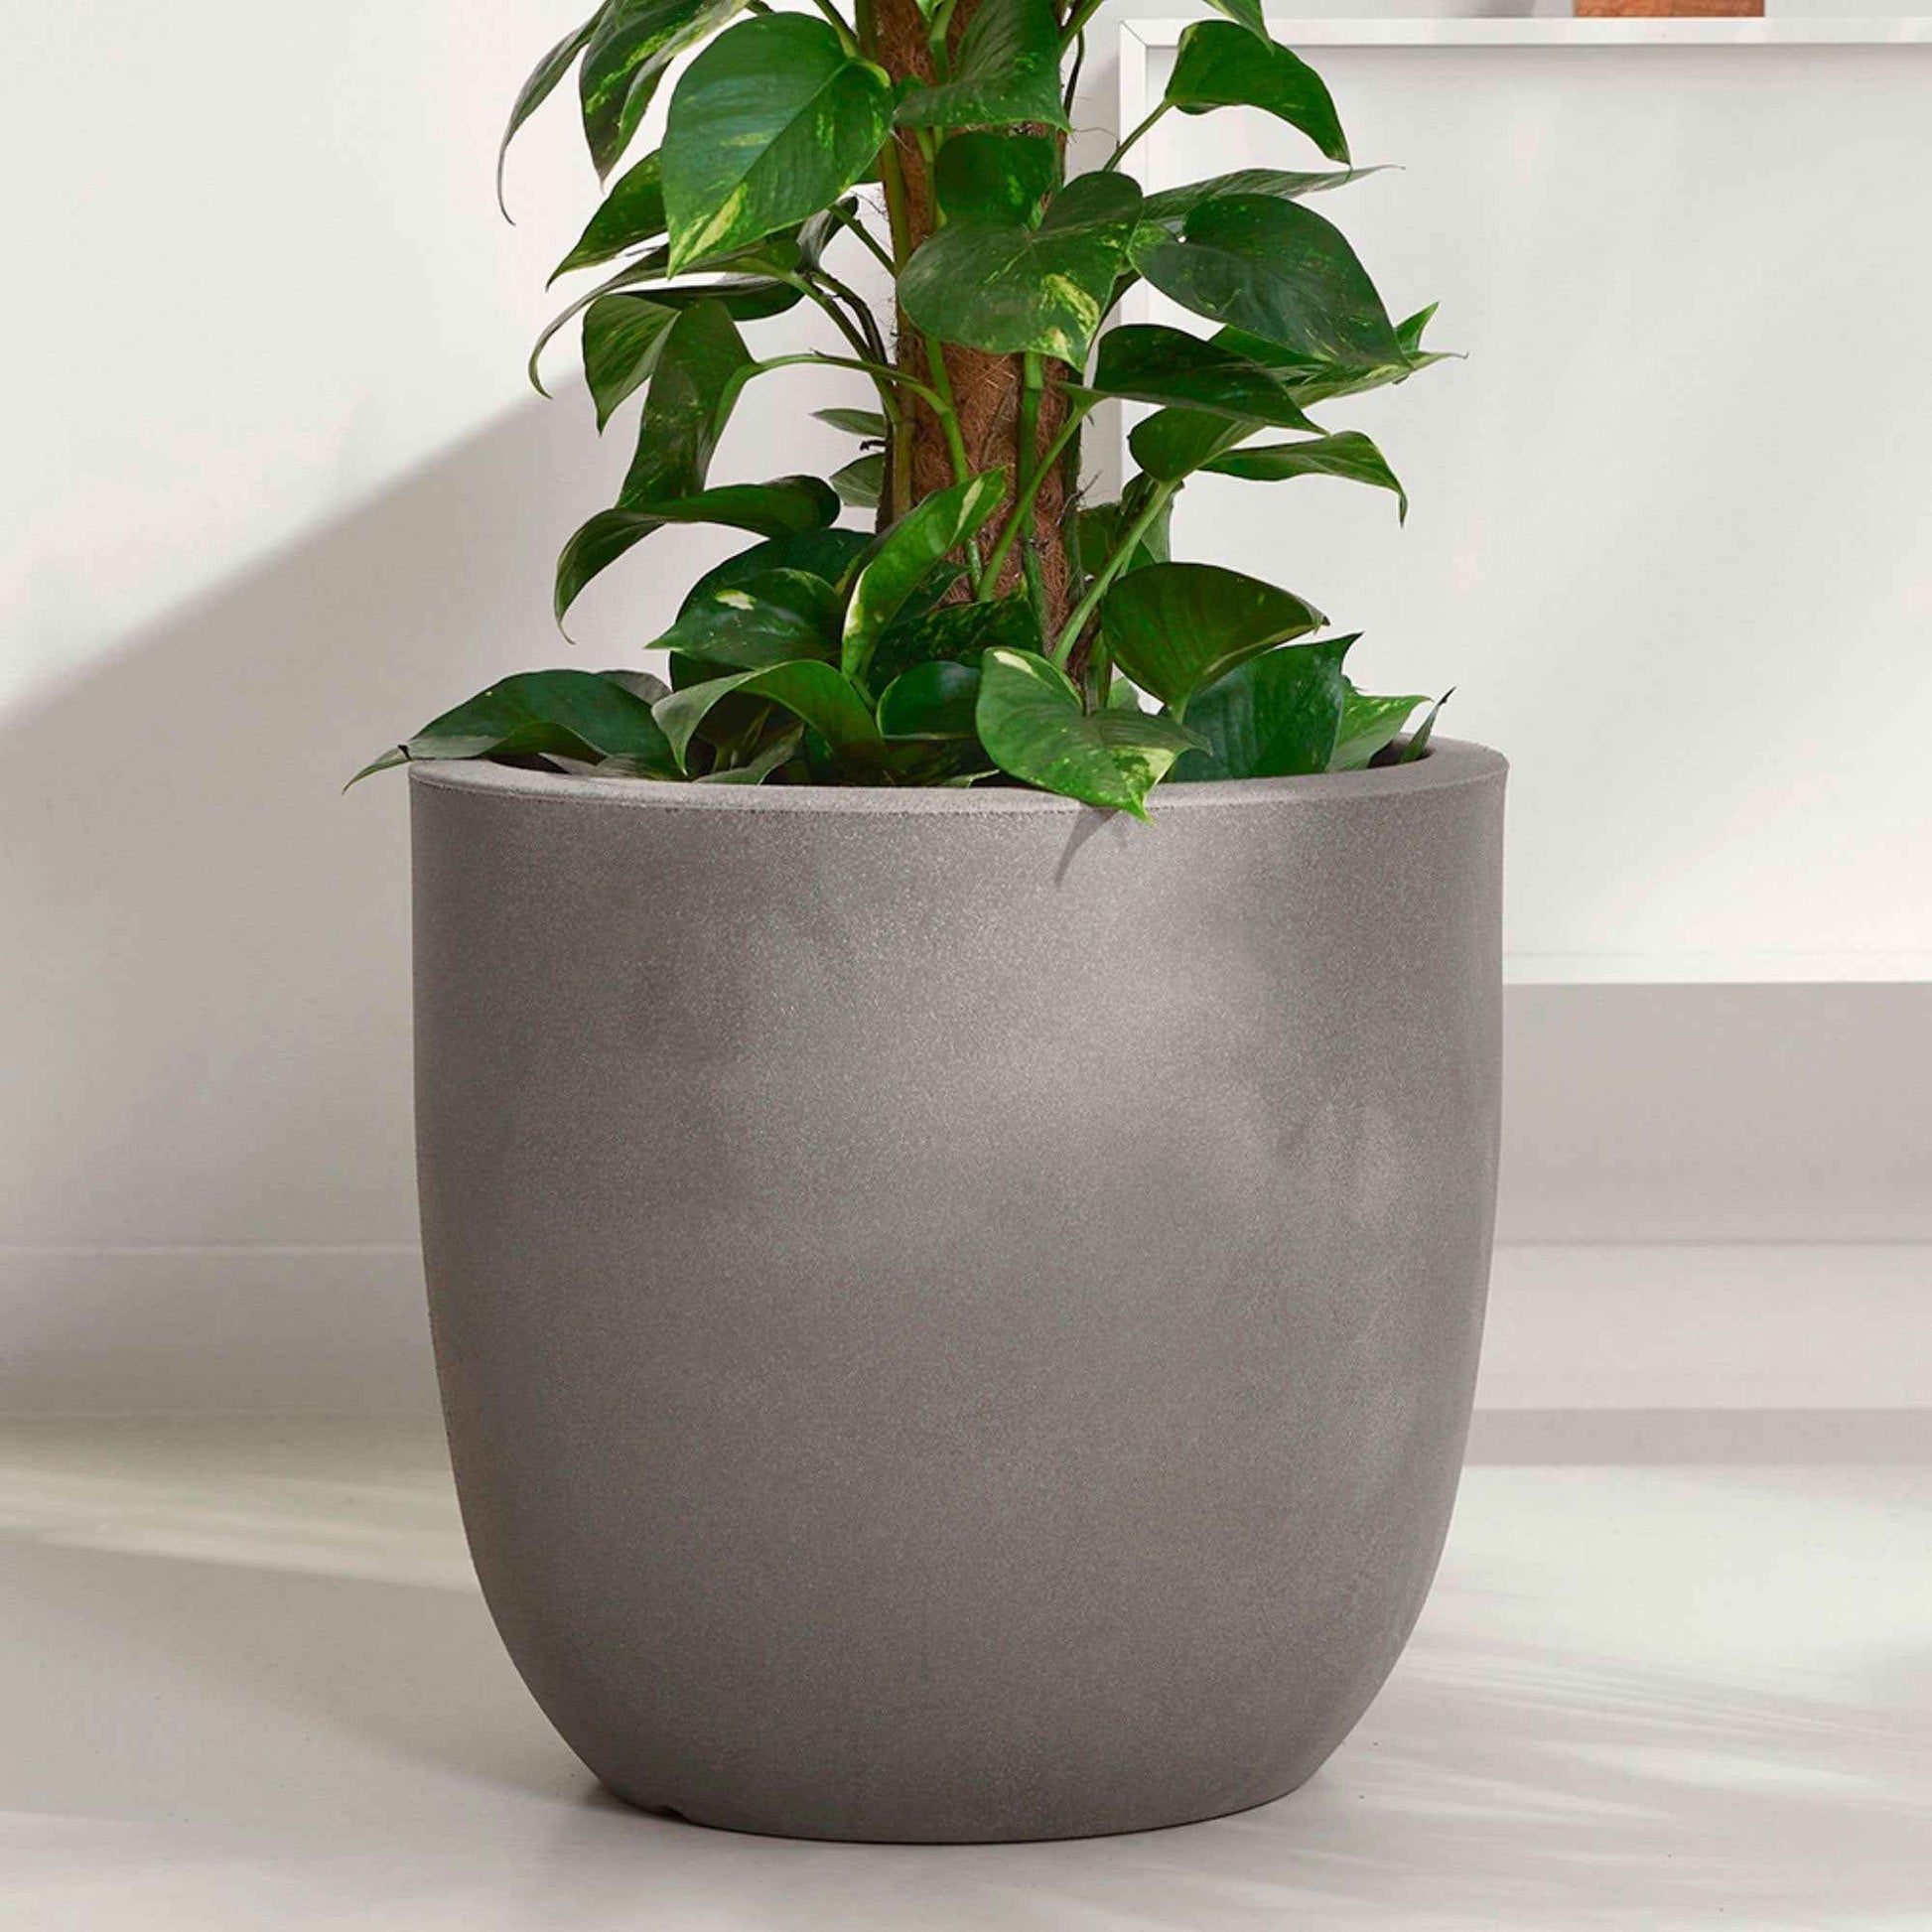 Capi Urban smooth pot de fleurs rond anthracite - Pot pour l'intérieur et l'extérieur - Marques